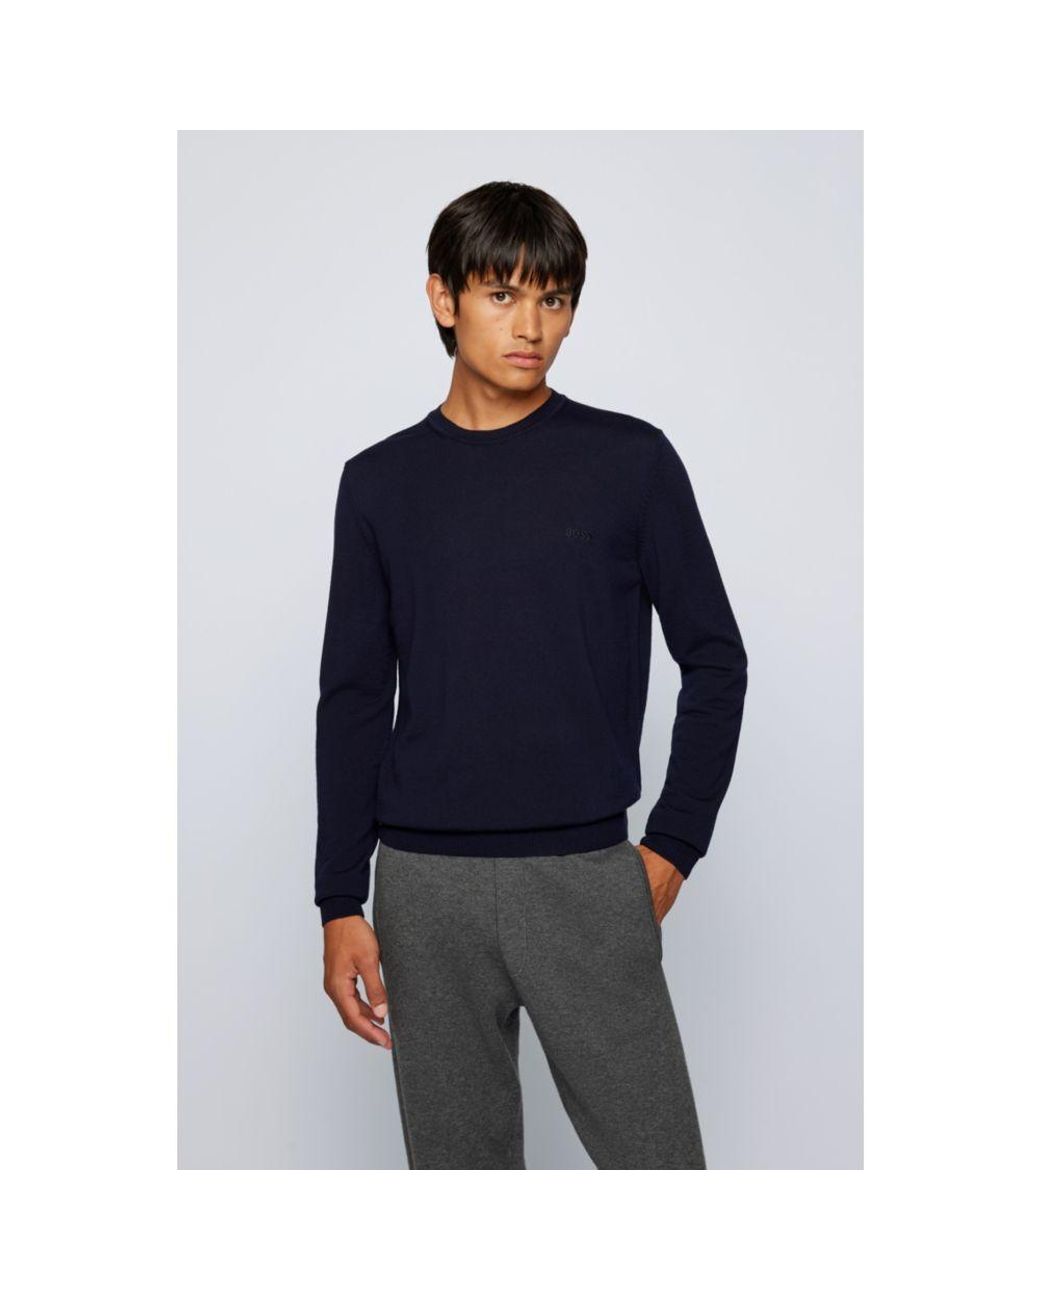 BOSS - Regular-fit V-neck sweater in extra-fine merino wool